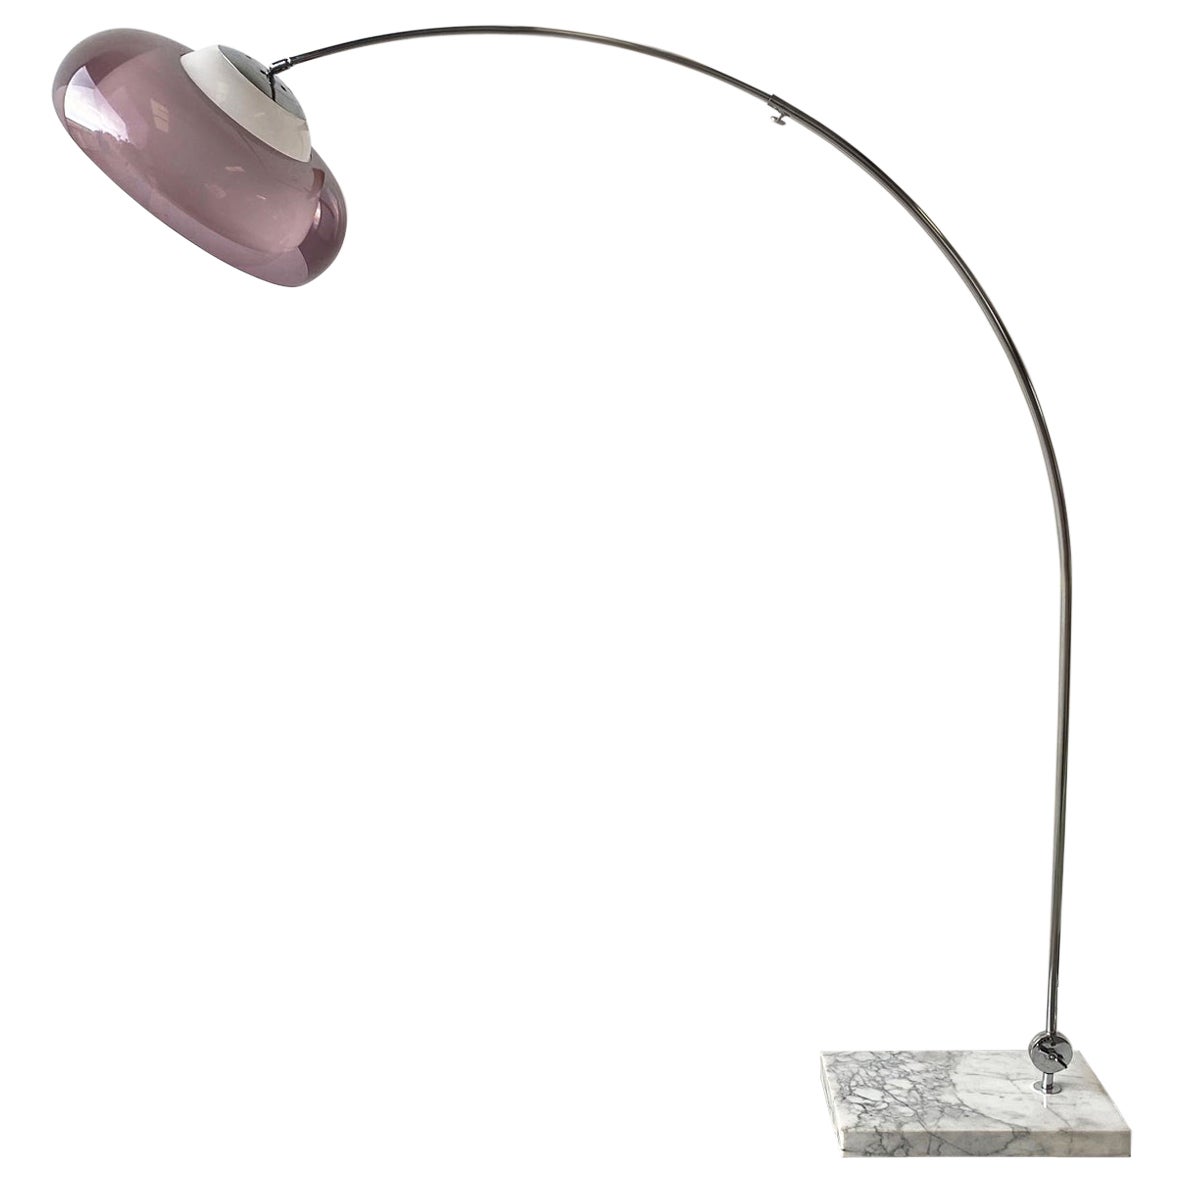 1960’s Mid century modern Italian floor arc lamp